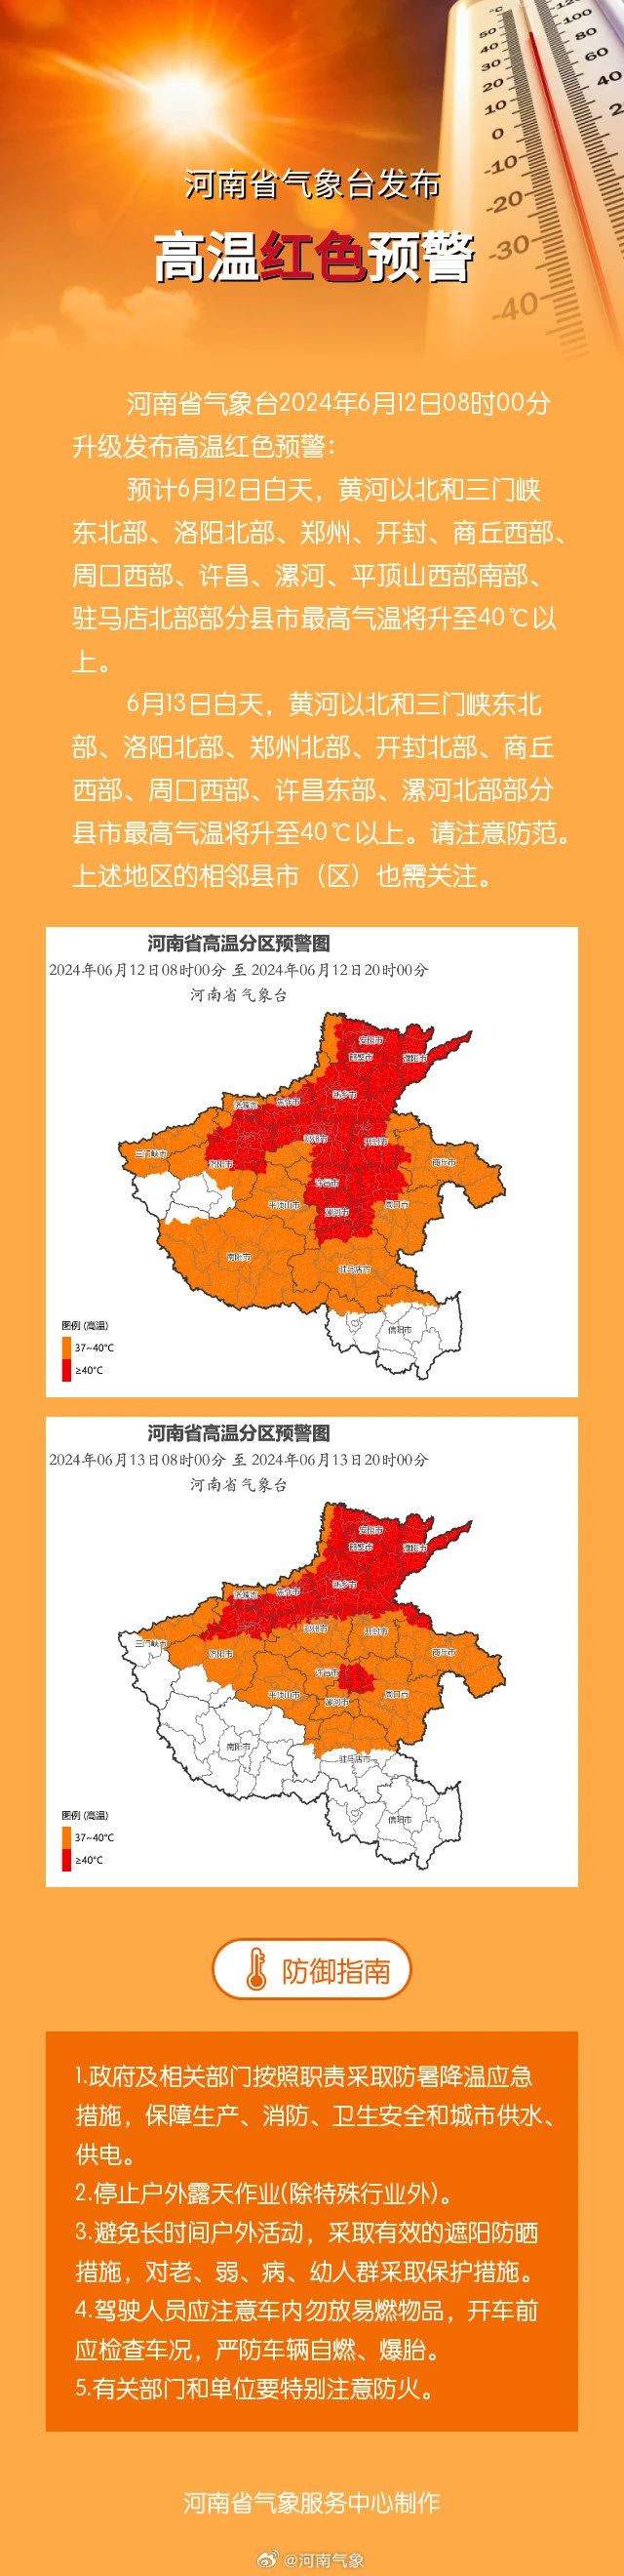 河南省已达到轻度干旱等级 多地气温将超40℃ 发布高温红色预警